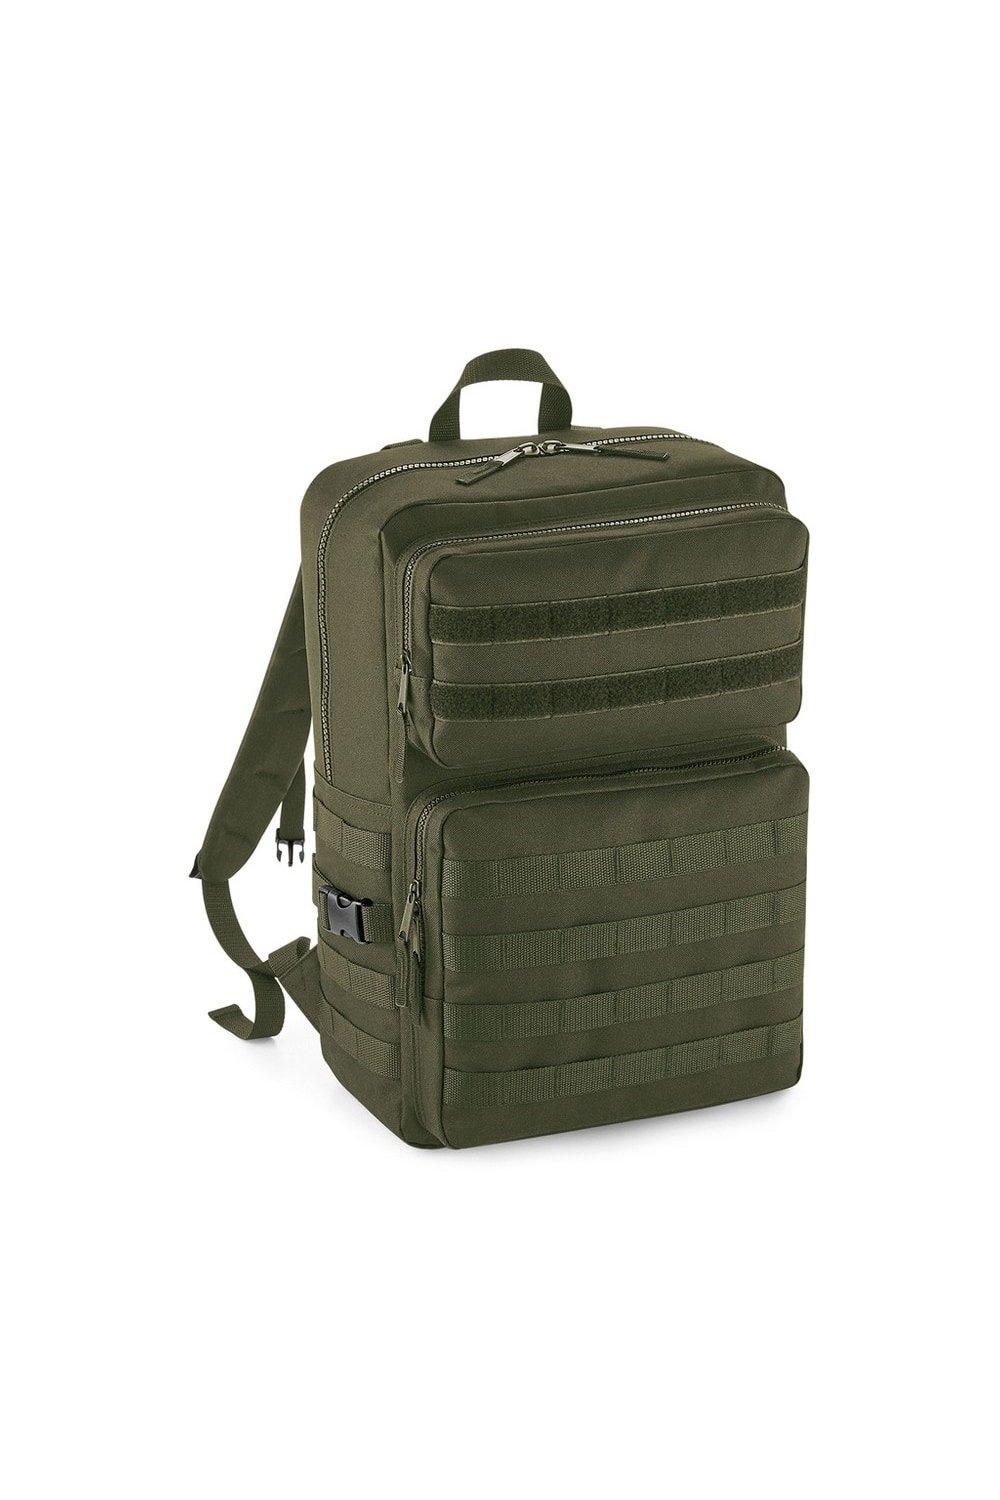 Тактический рюкзак MOLLE Bagbase, зеленый huntvp 1000d тактический рюкзак 45l molle рюкзак штурмовой пакет открытый кемпинг туризм рюкзак открытый рюкзак коричневый